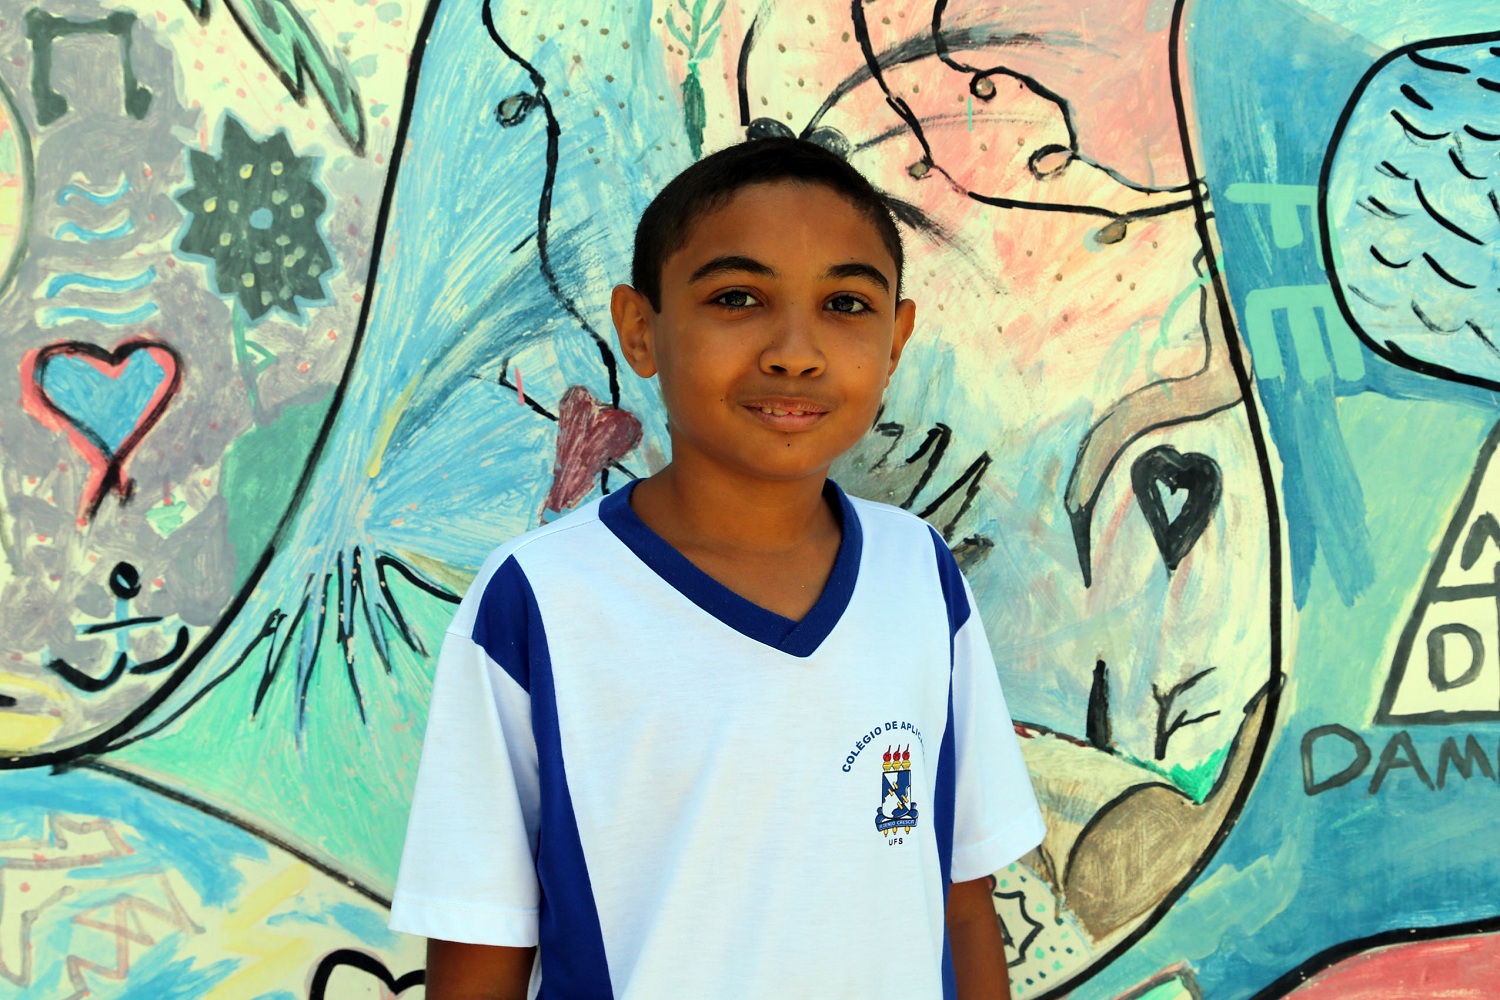 Aluno do 8º ano, João Pedro Natividade dos Santos conquistou medalha de bronze no nível 1 da competição.